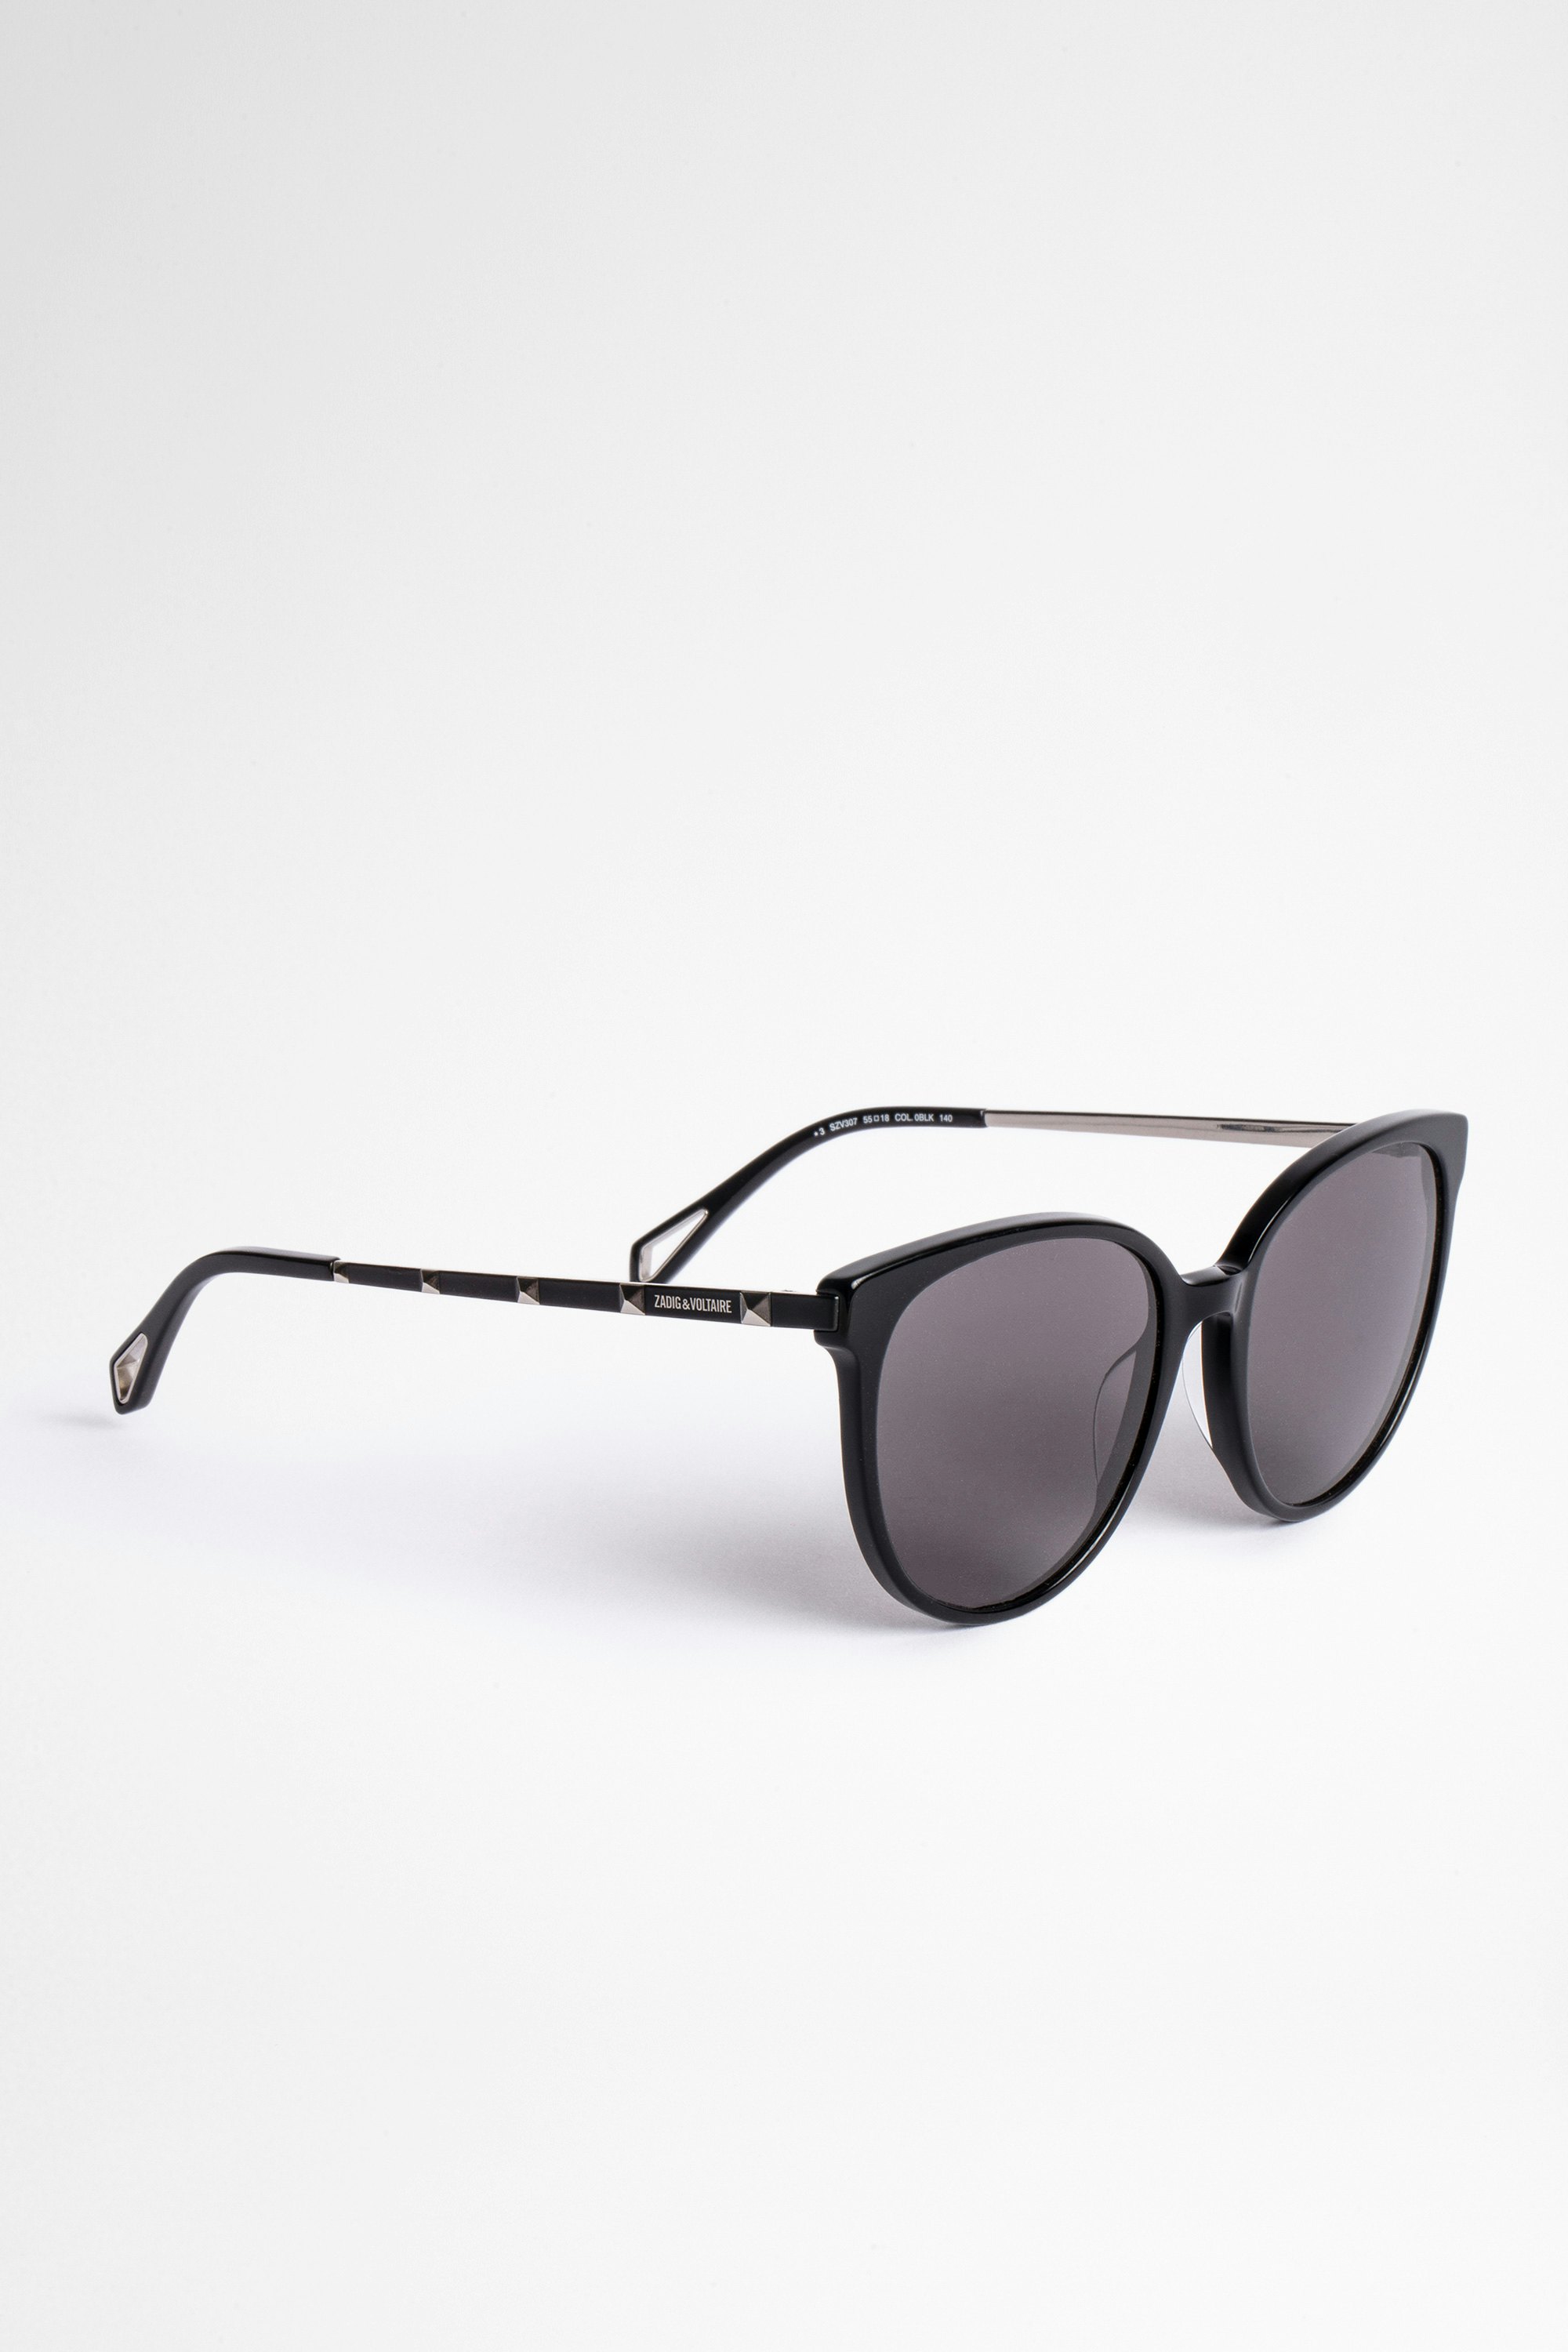 Studs Sunglasses Unisex bio-acetate sunglasses in black with tinted lenses